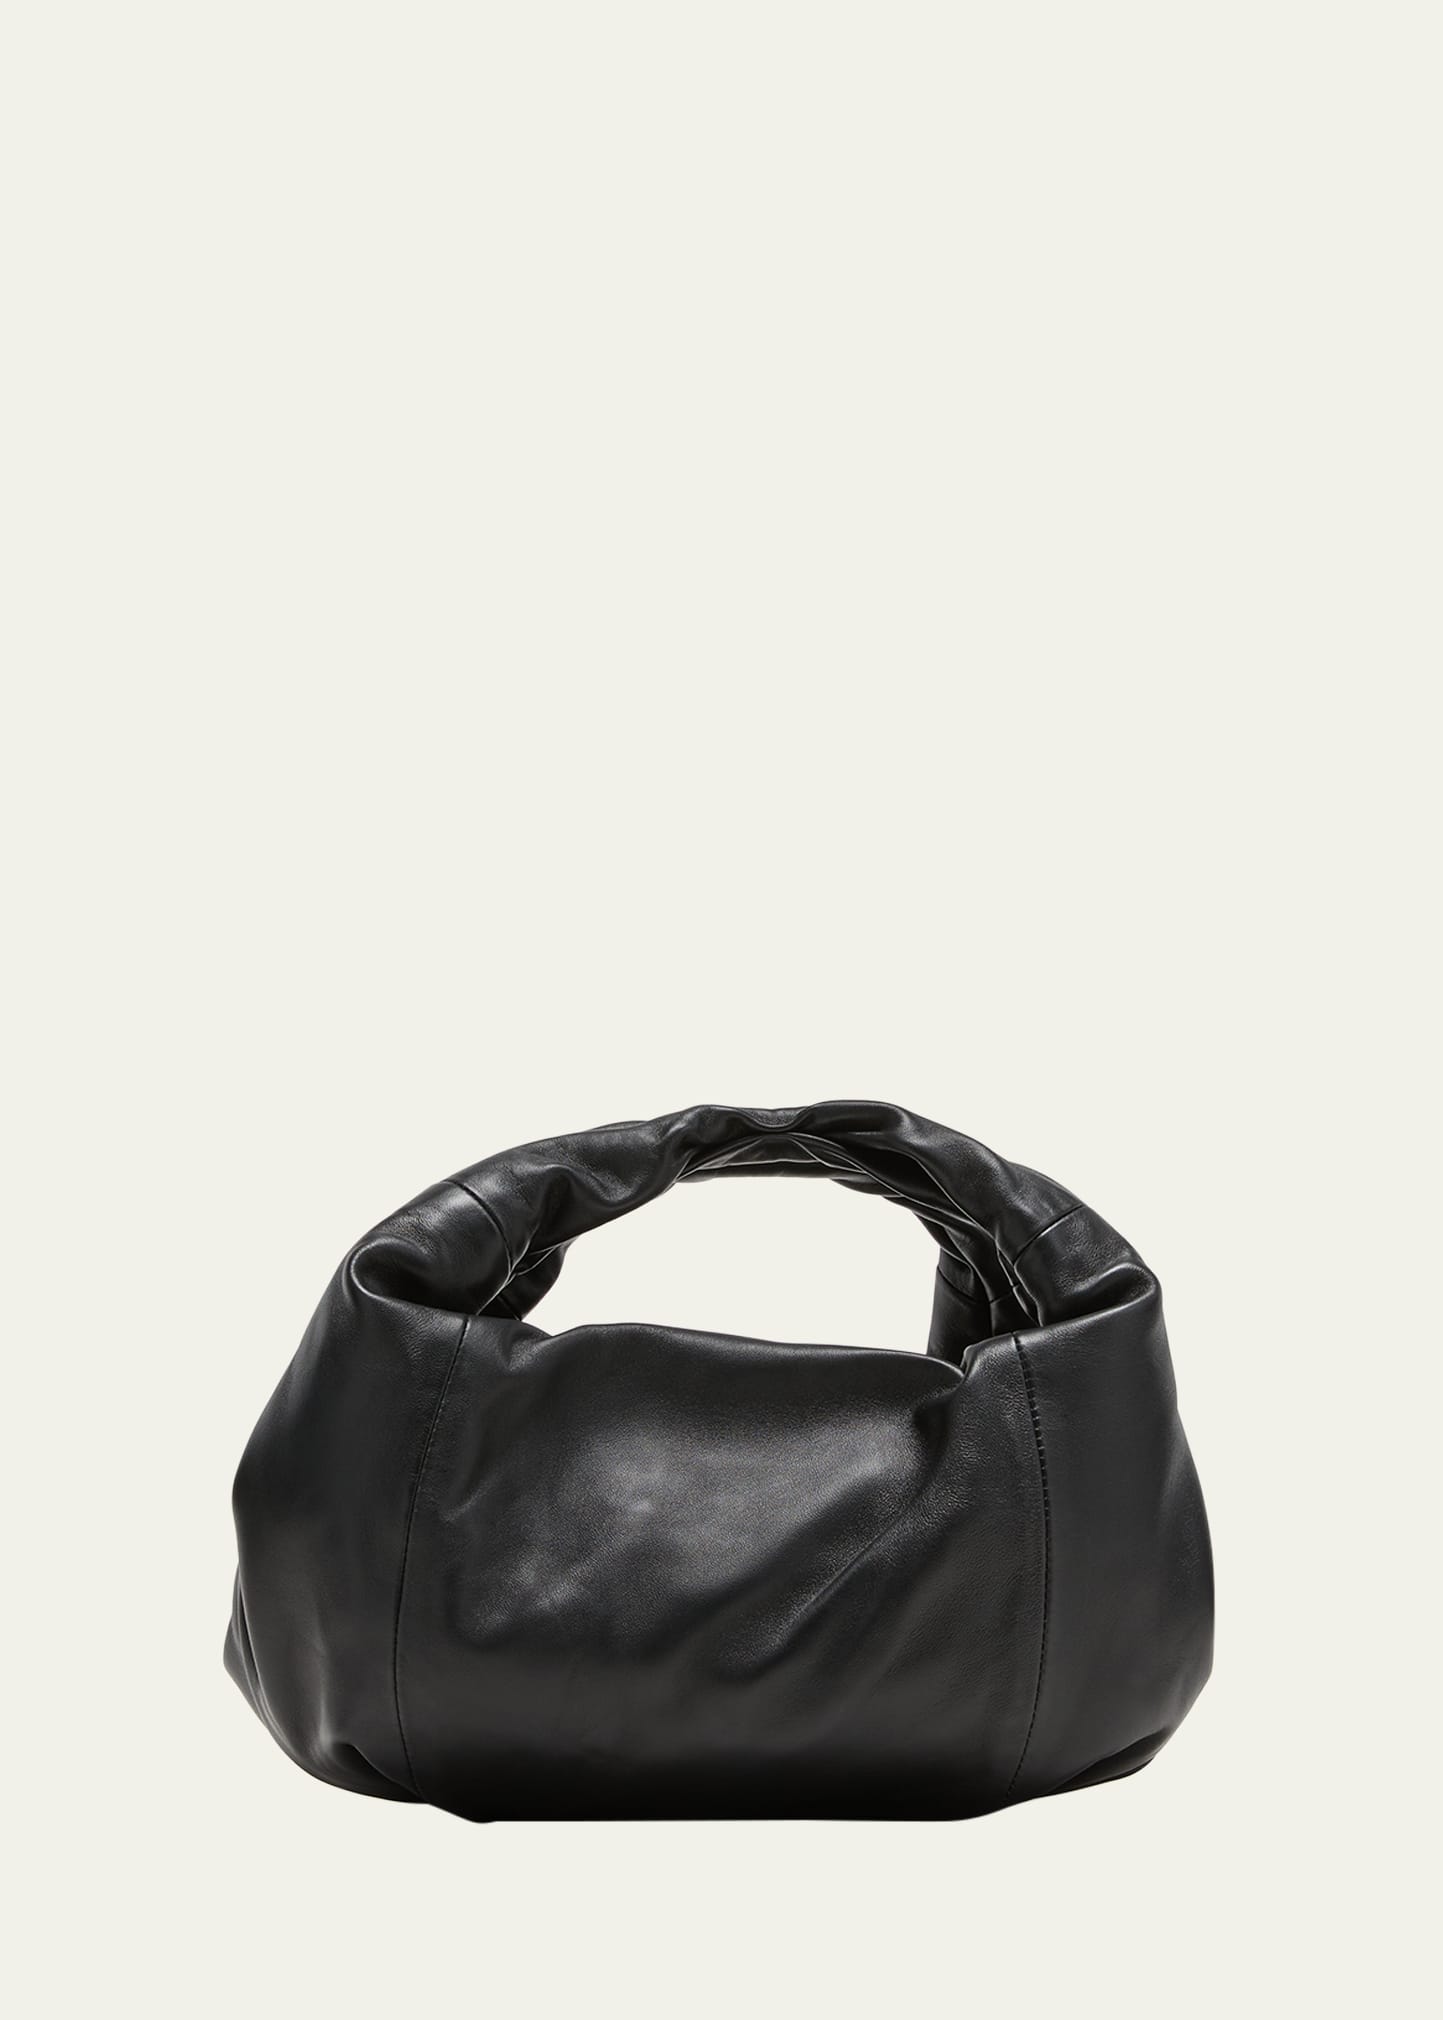 Dries Van Noten Twister Leather Top-handle Bag In Black